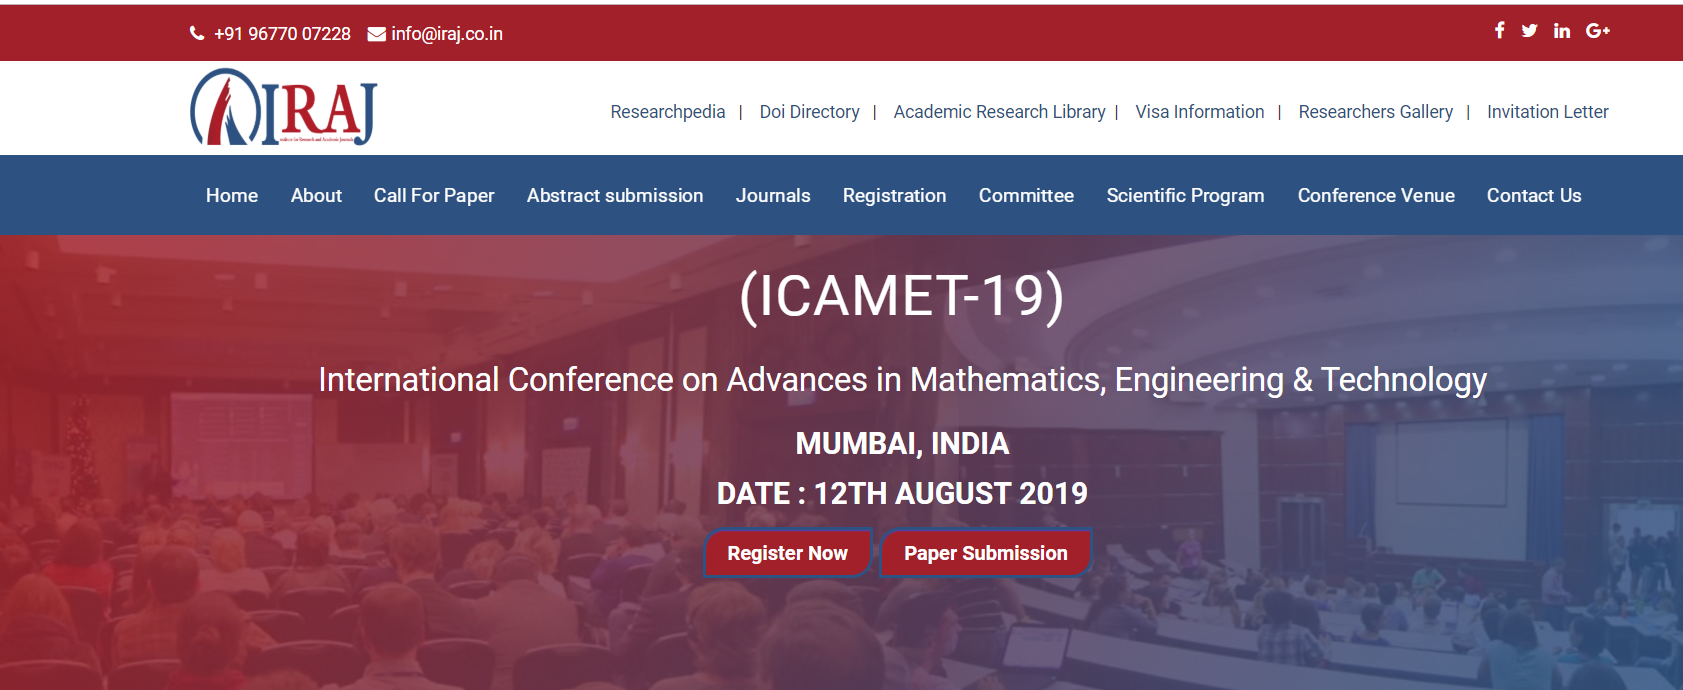 International Conference on Advances in Mathematics, Engineering & Technology (ICAMET-19), Mumbai, Maharashtra, India